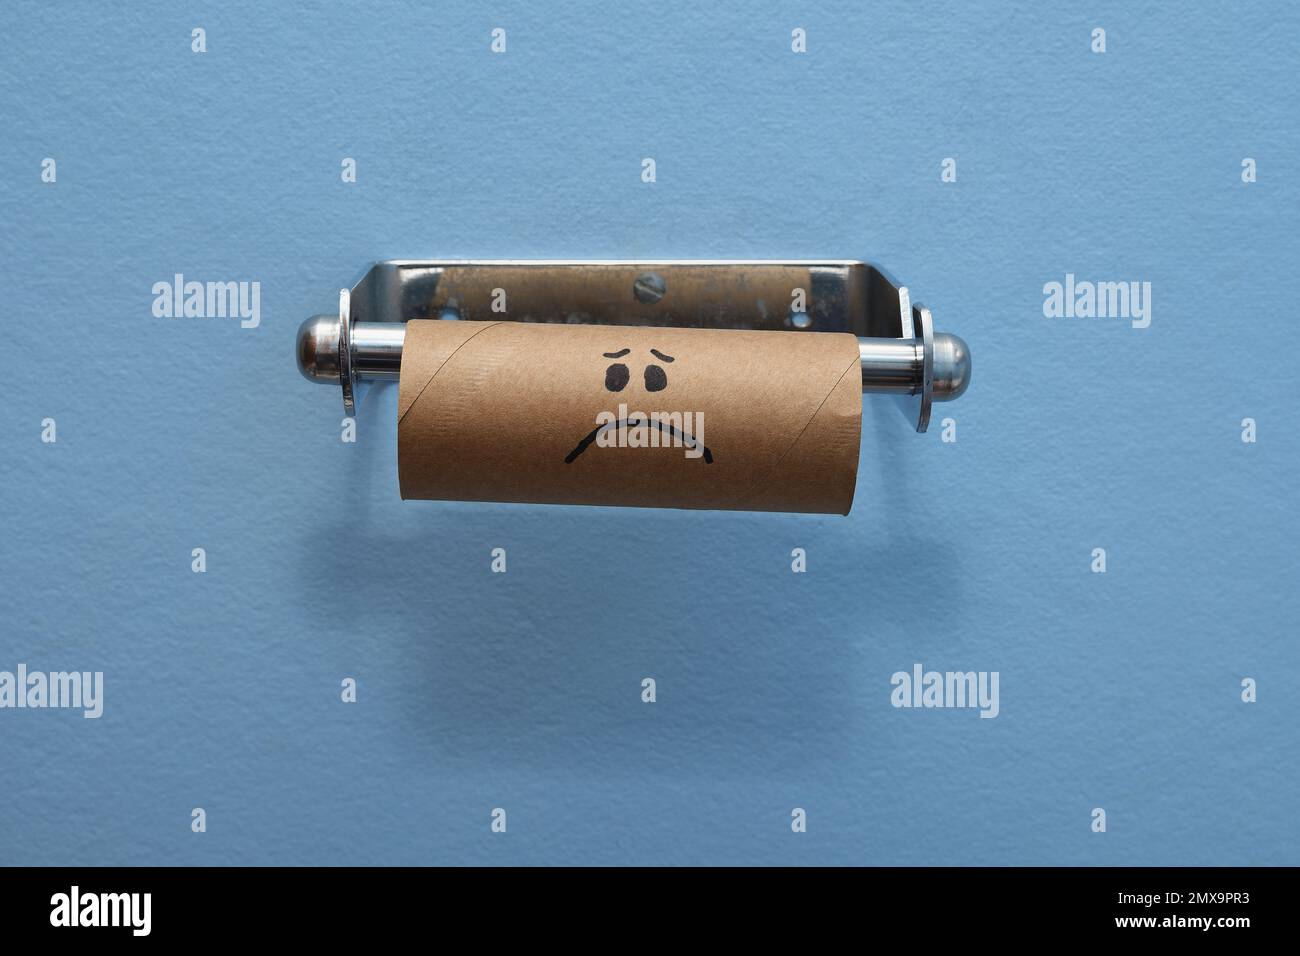 Un rouleau de toilette en carton brun au visage triste a épuisé de papier/mouchoirs de toilette, sur un fond de mur bleu clair au milieu du cadre Banque D'Images